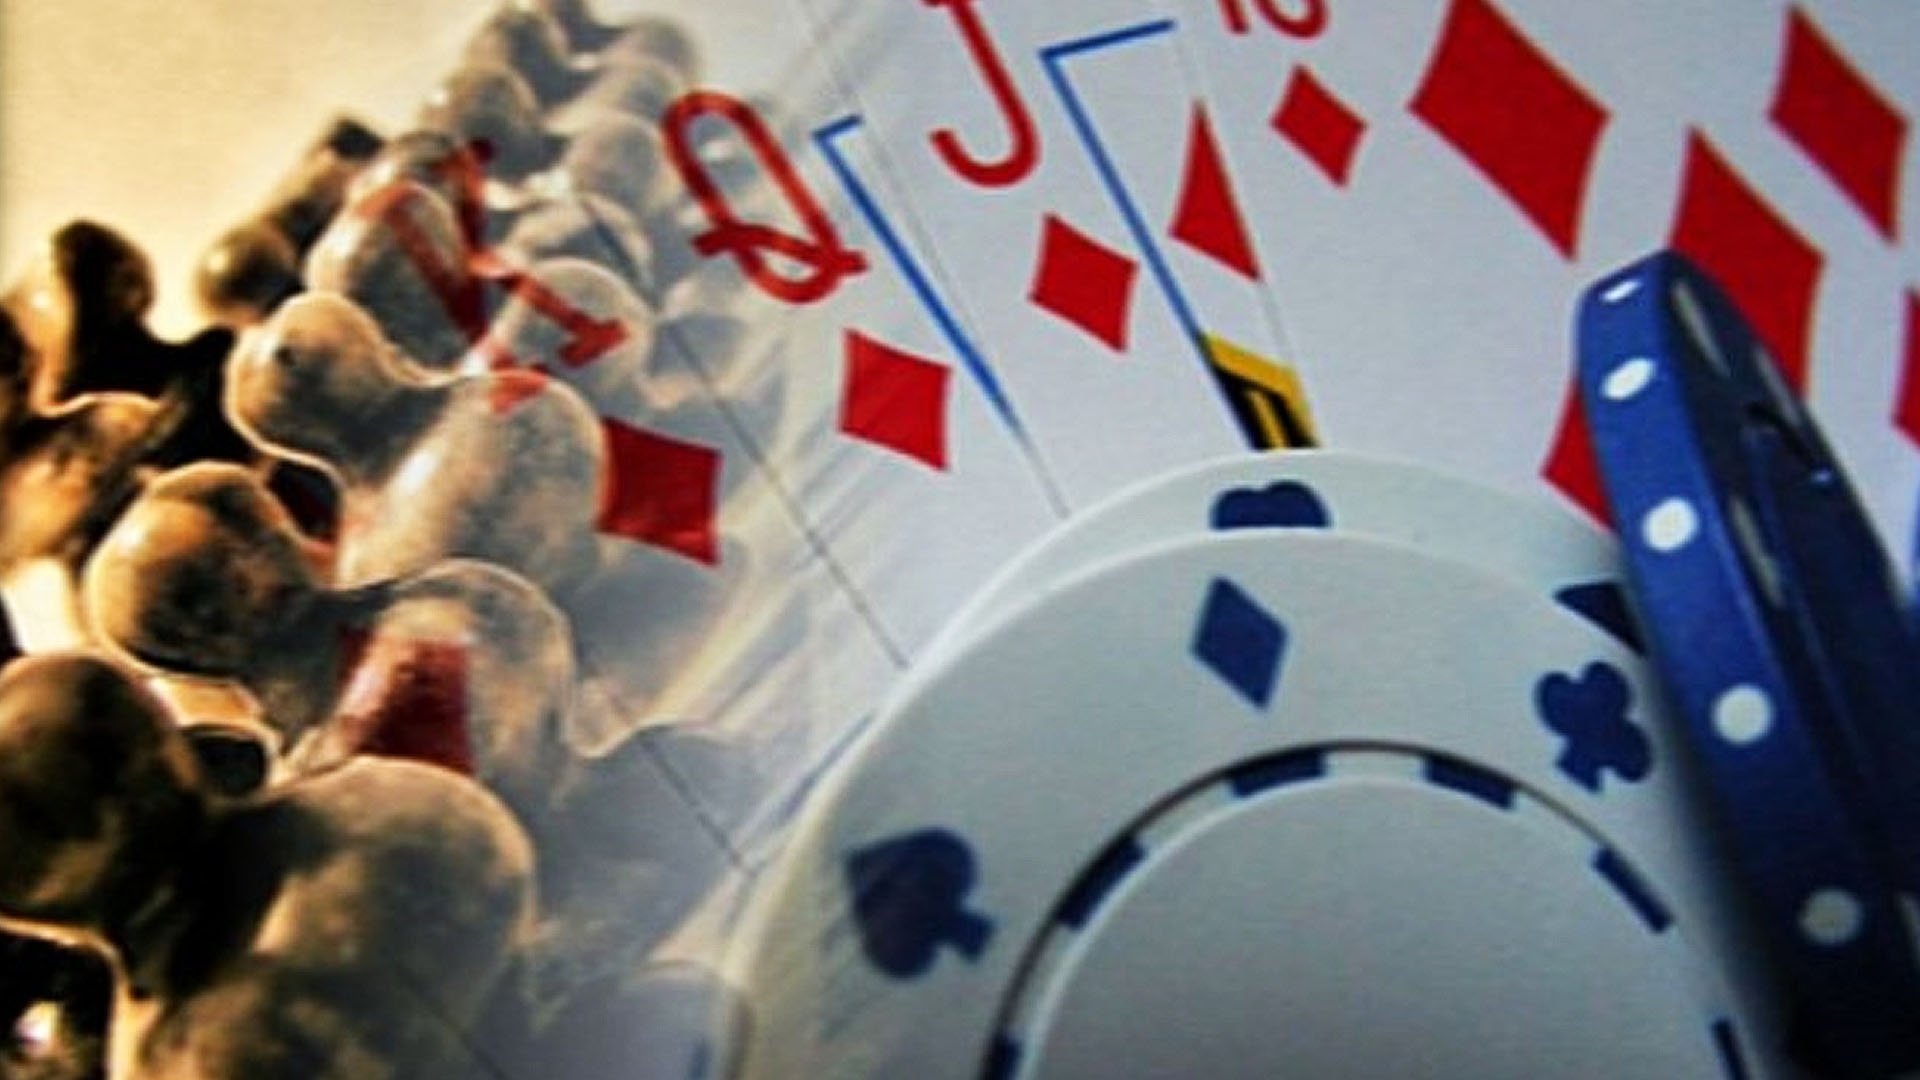 Governo brasileiro reconhece xadrez, dama, bridge, go e poker como esportes  • TABLE GAMES